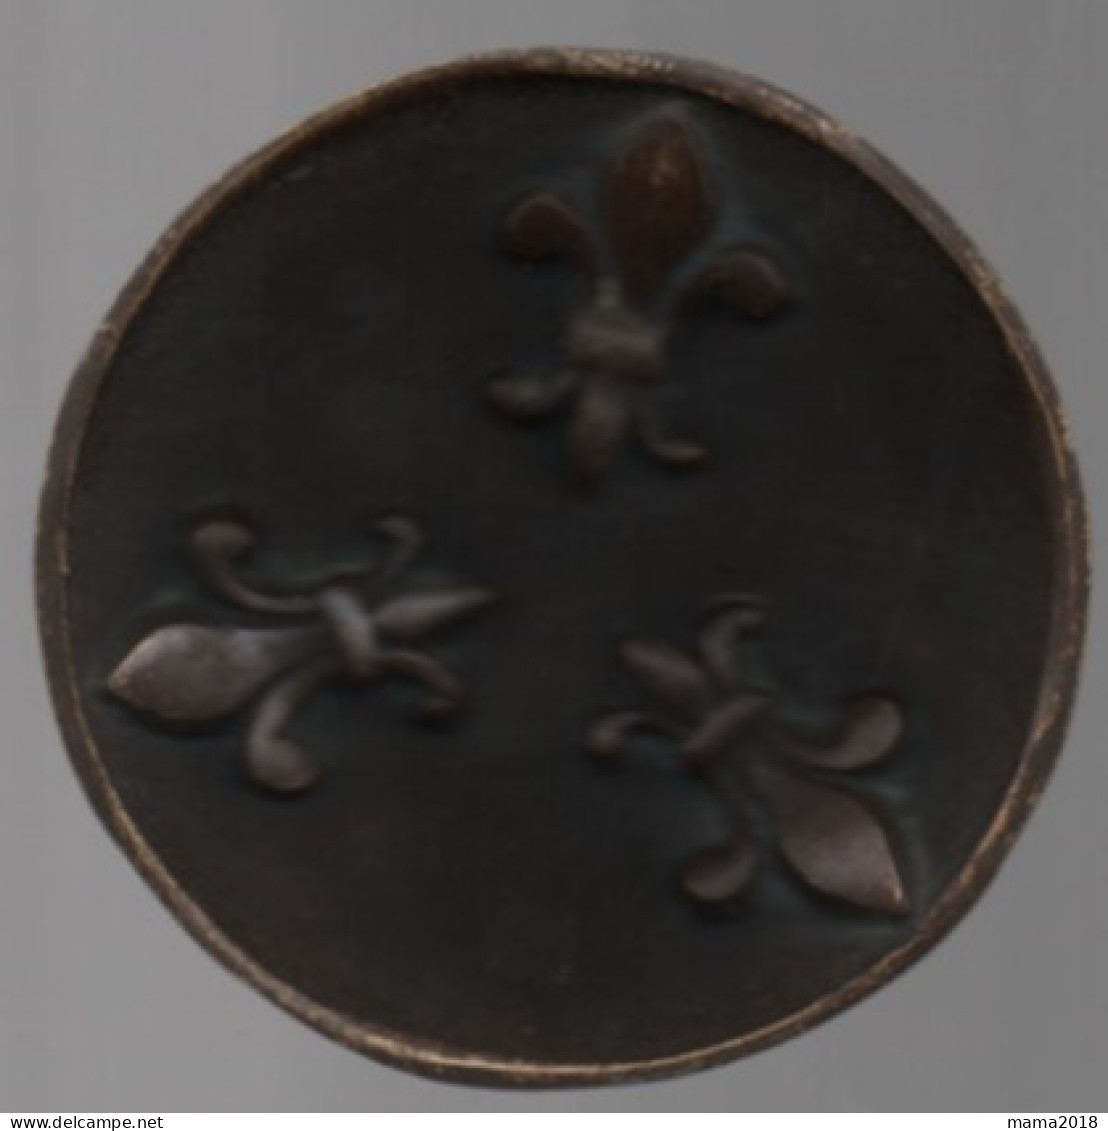 Bronze Ancienne  Coupelle  Décor Fleurs De Lys  10.5 Cm - Bronzen